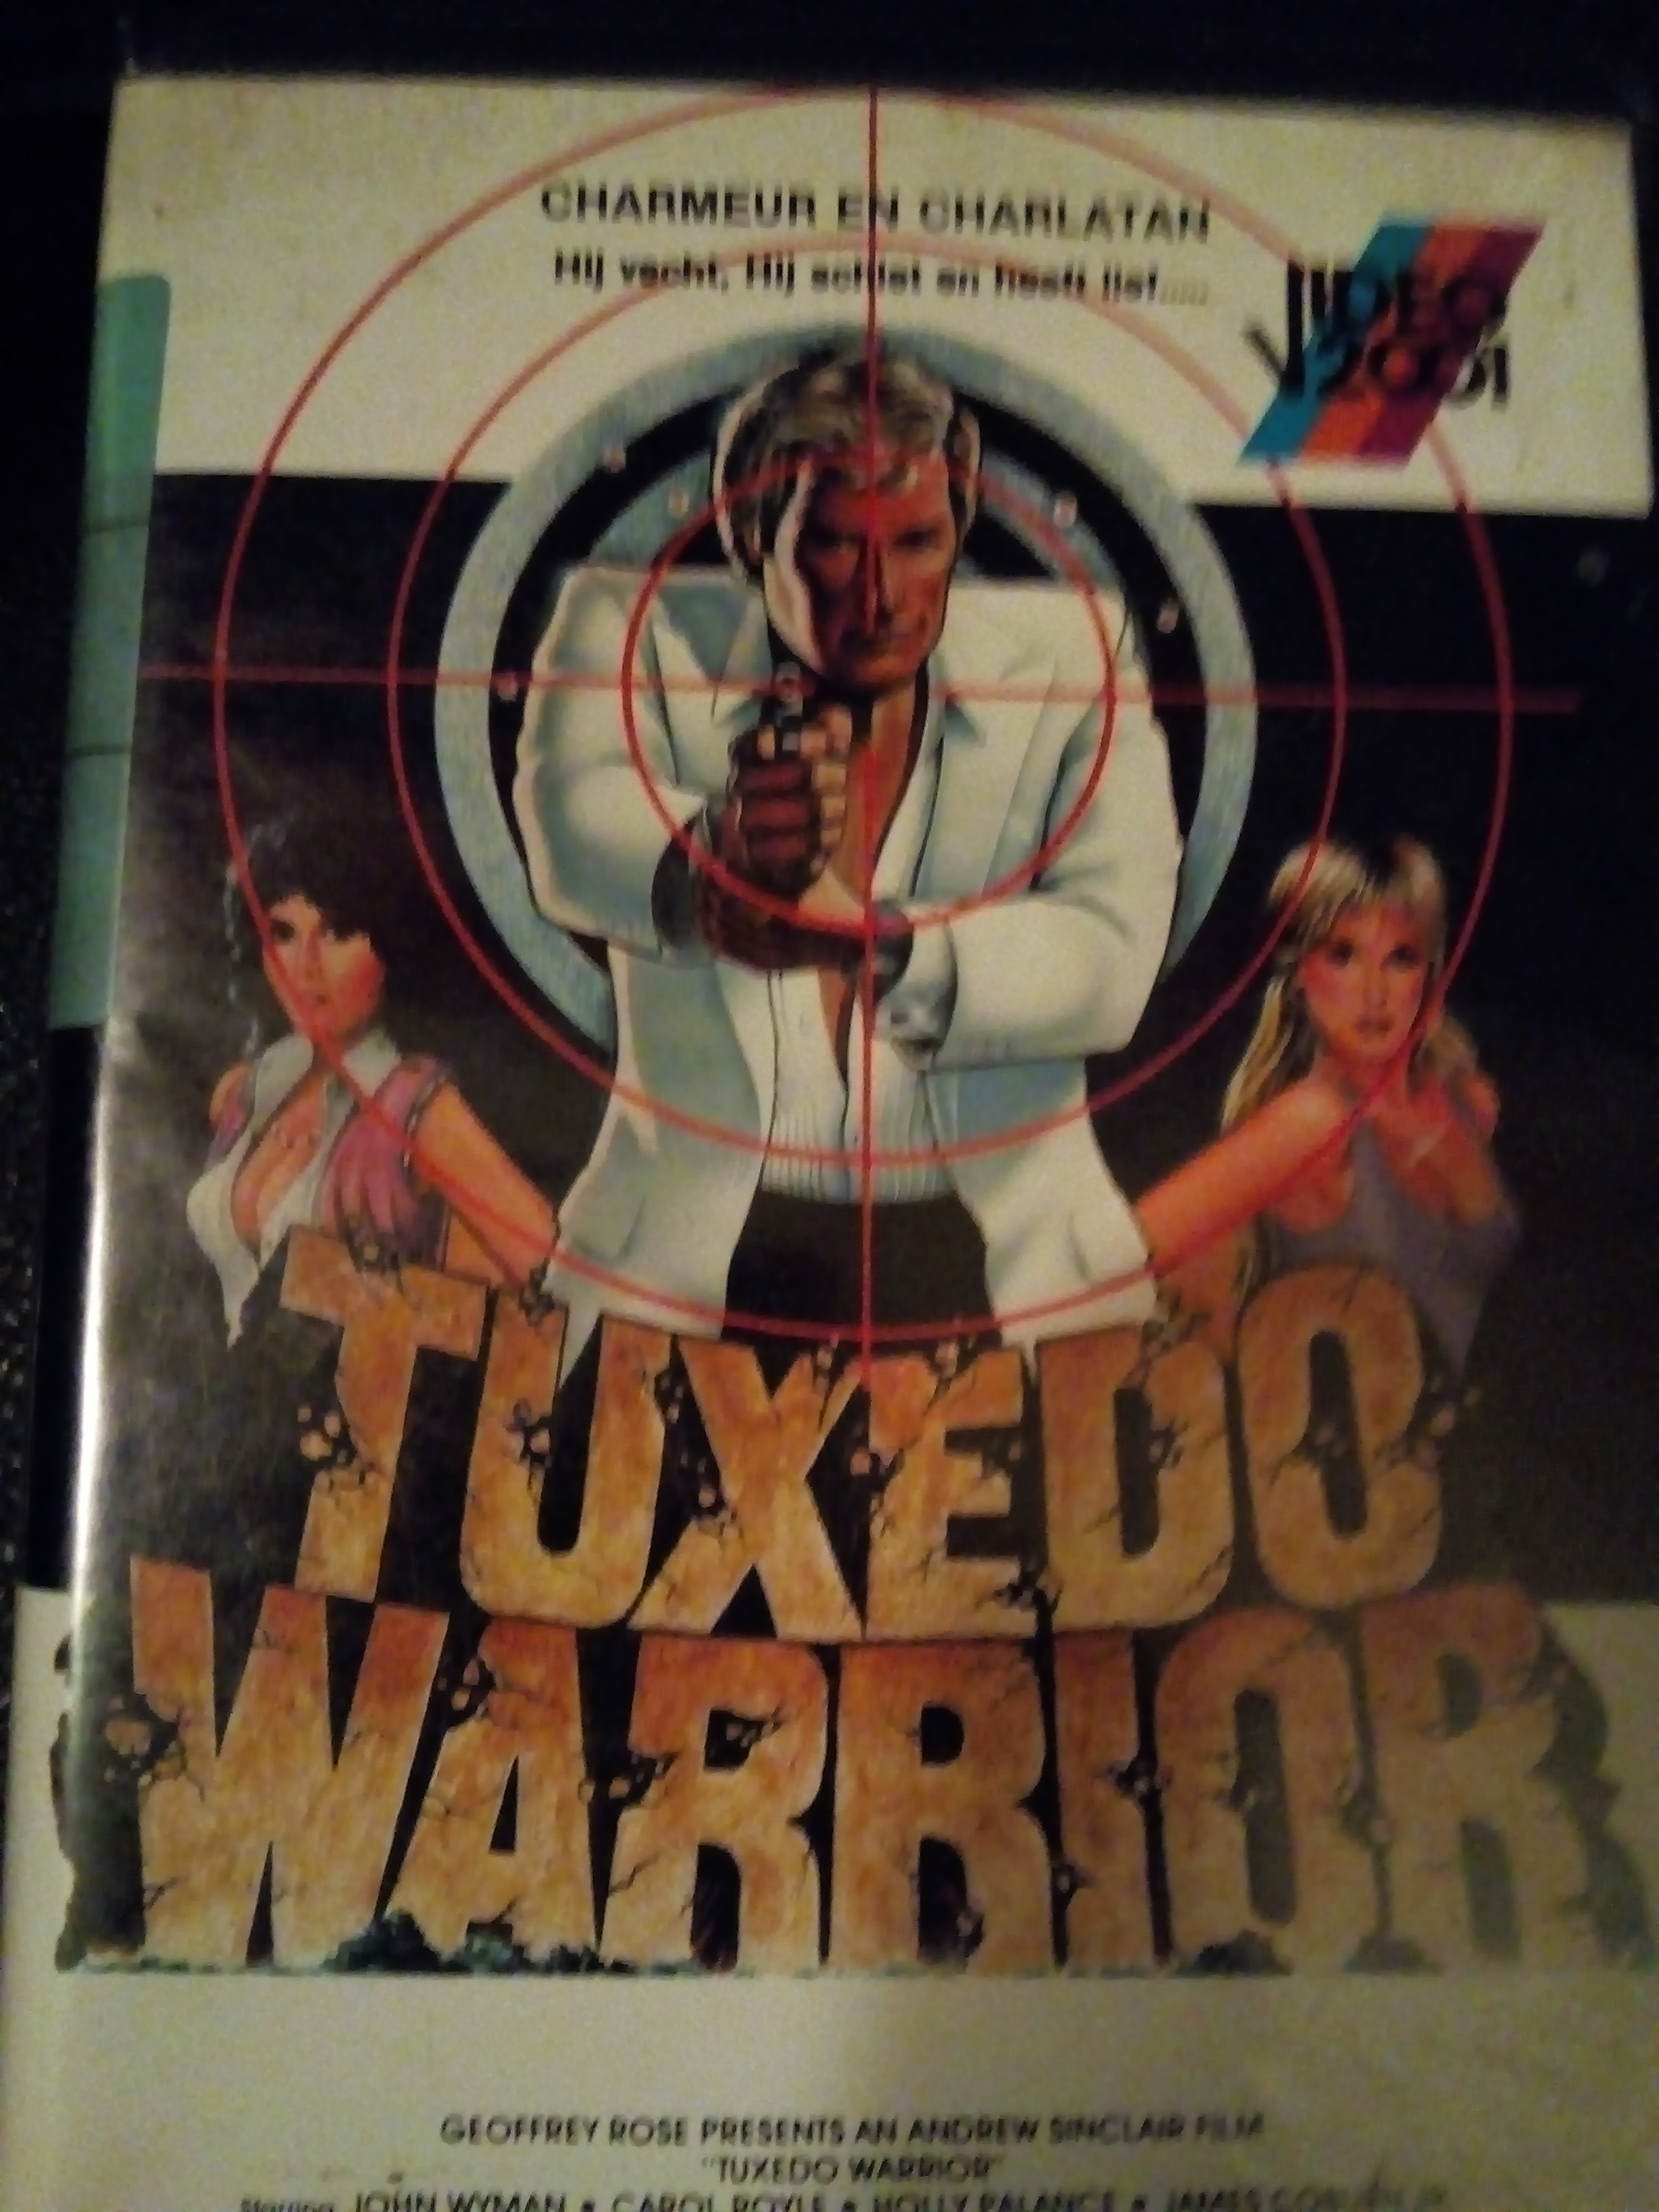 Tuxedo Warrior (1984) Screenshot 3 